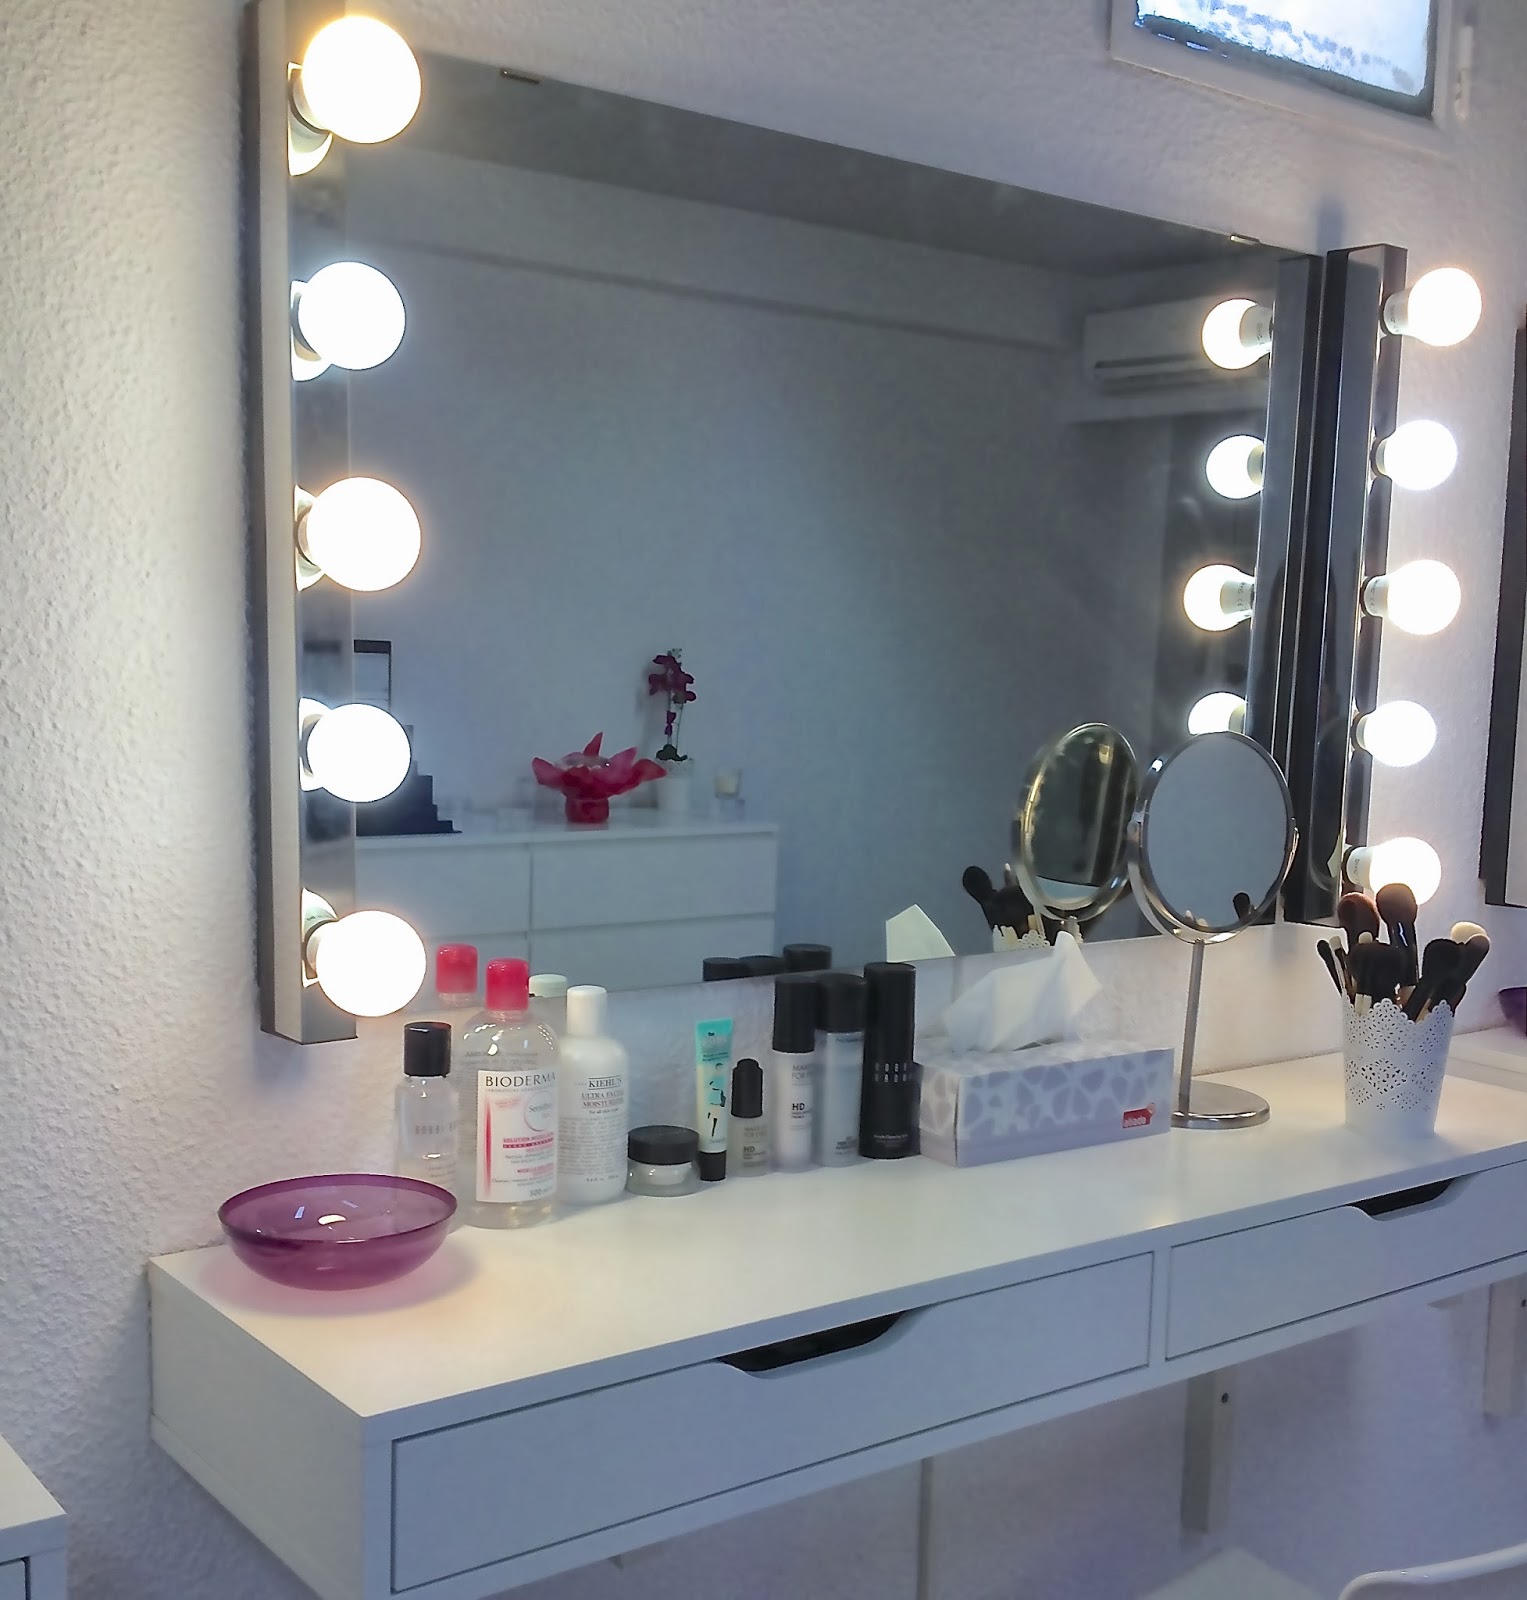 Aparichi Makeup: Blog de Maquillaje y Belleza - Maquilladora